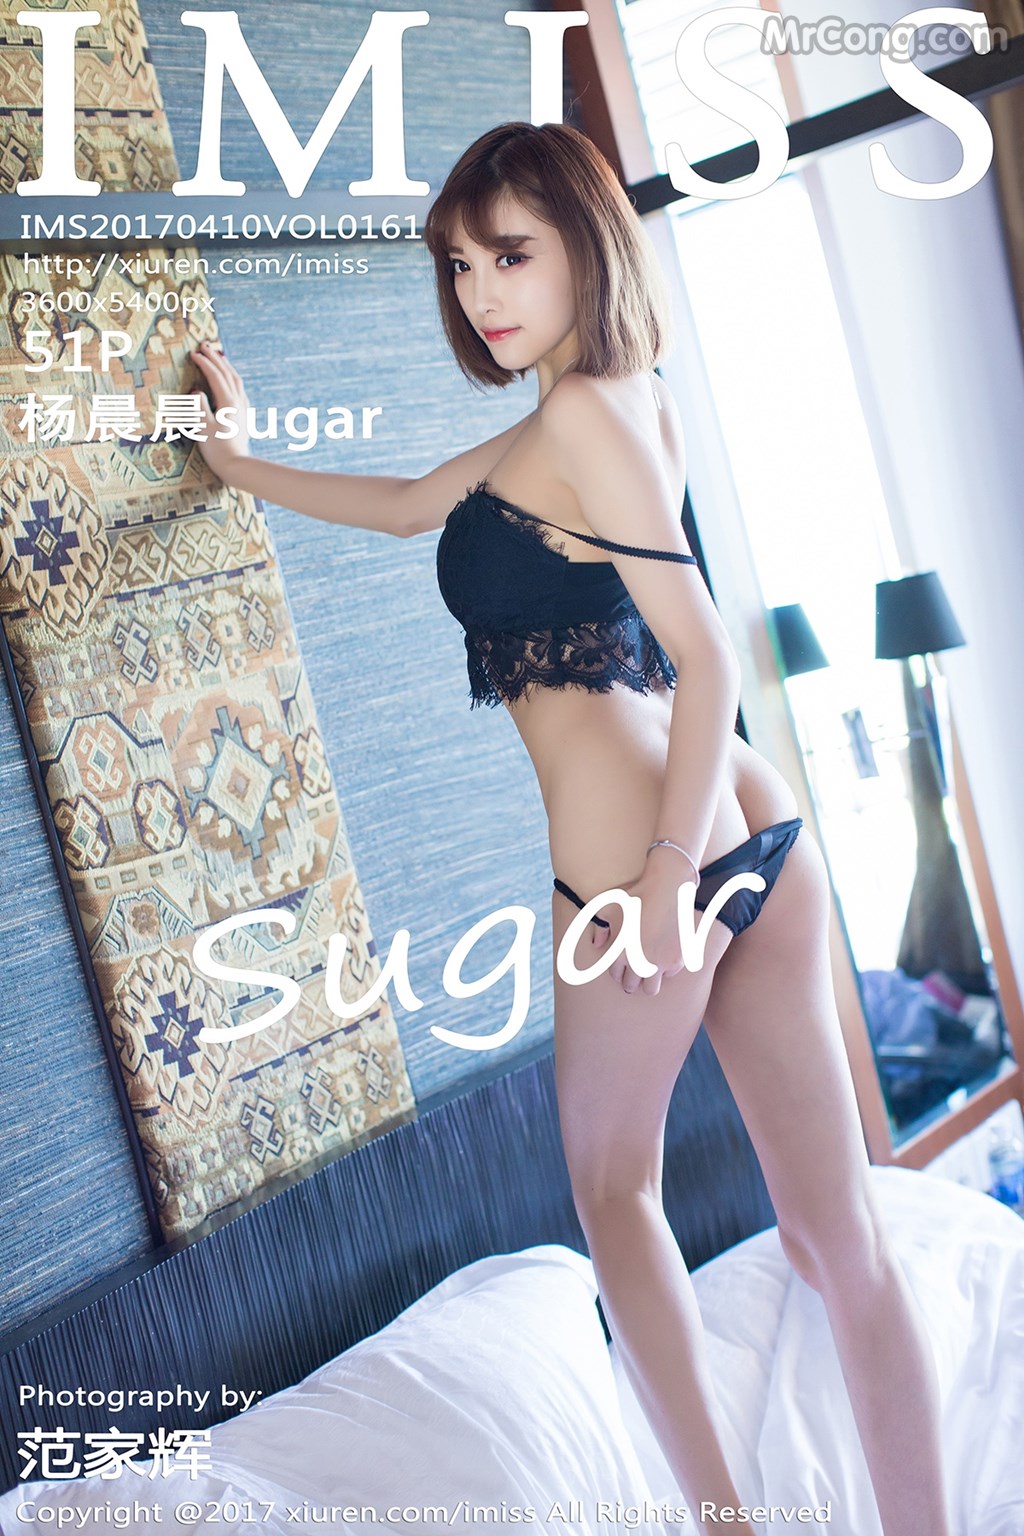 IMISS Vol.161: Model Yang Chen Chen (杨晨晨 sugar) (52 photos)